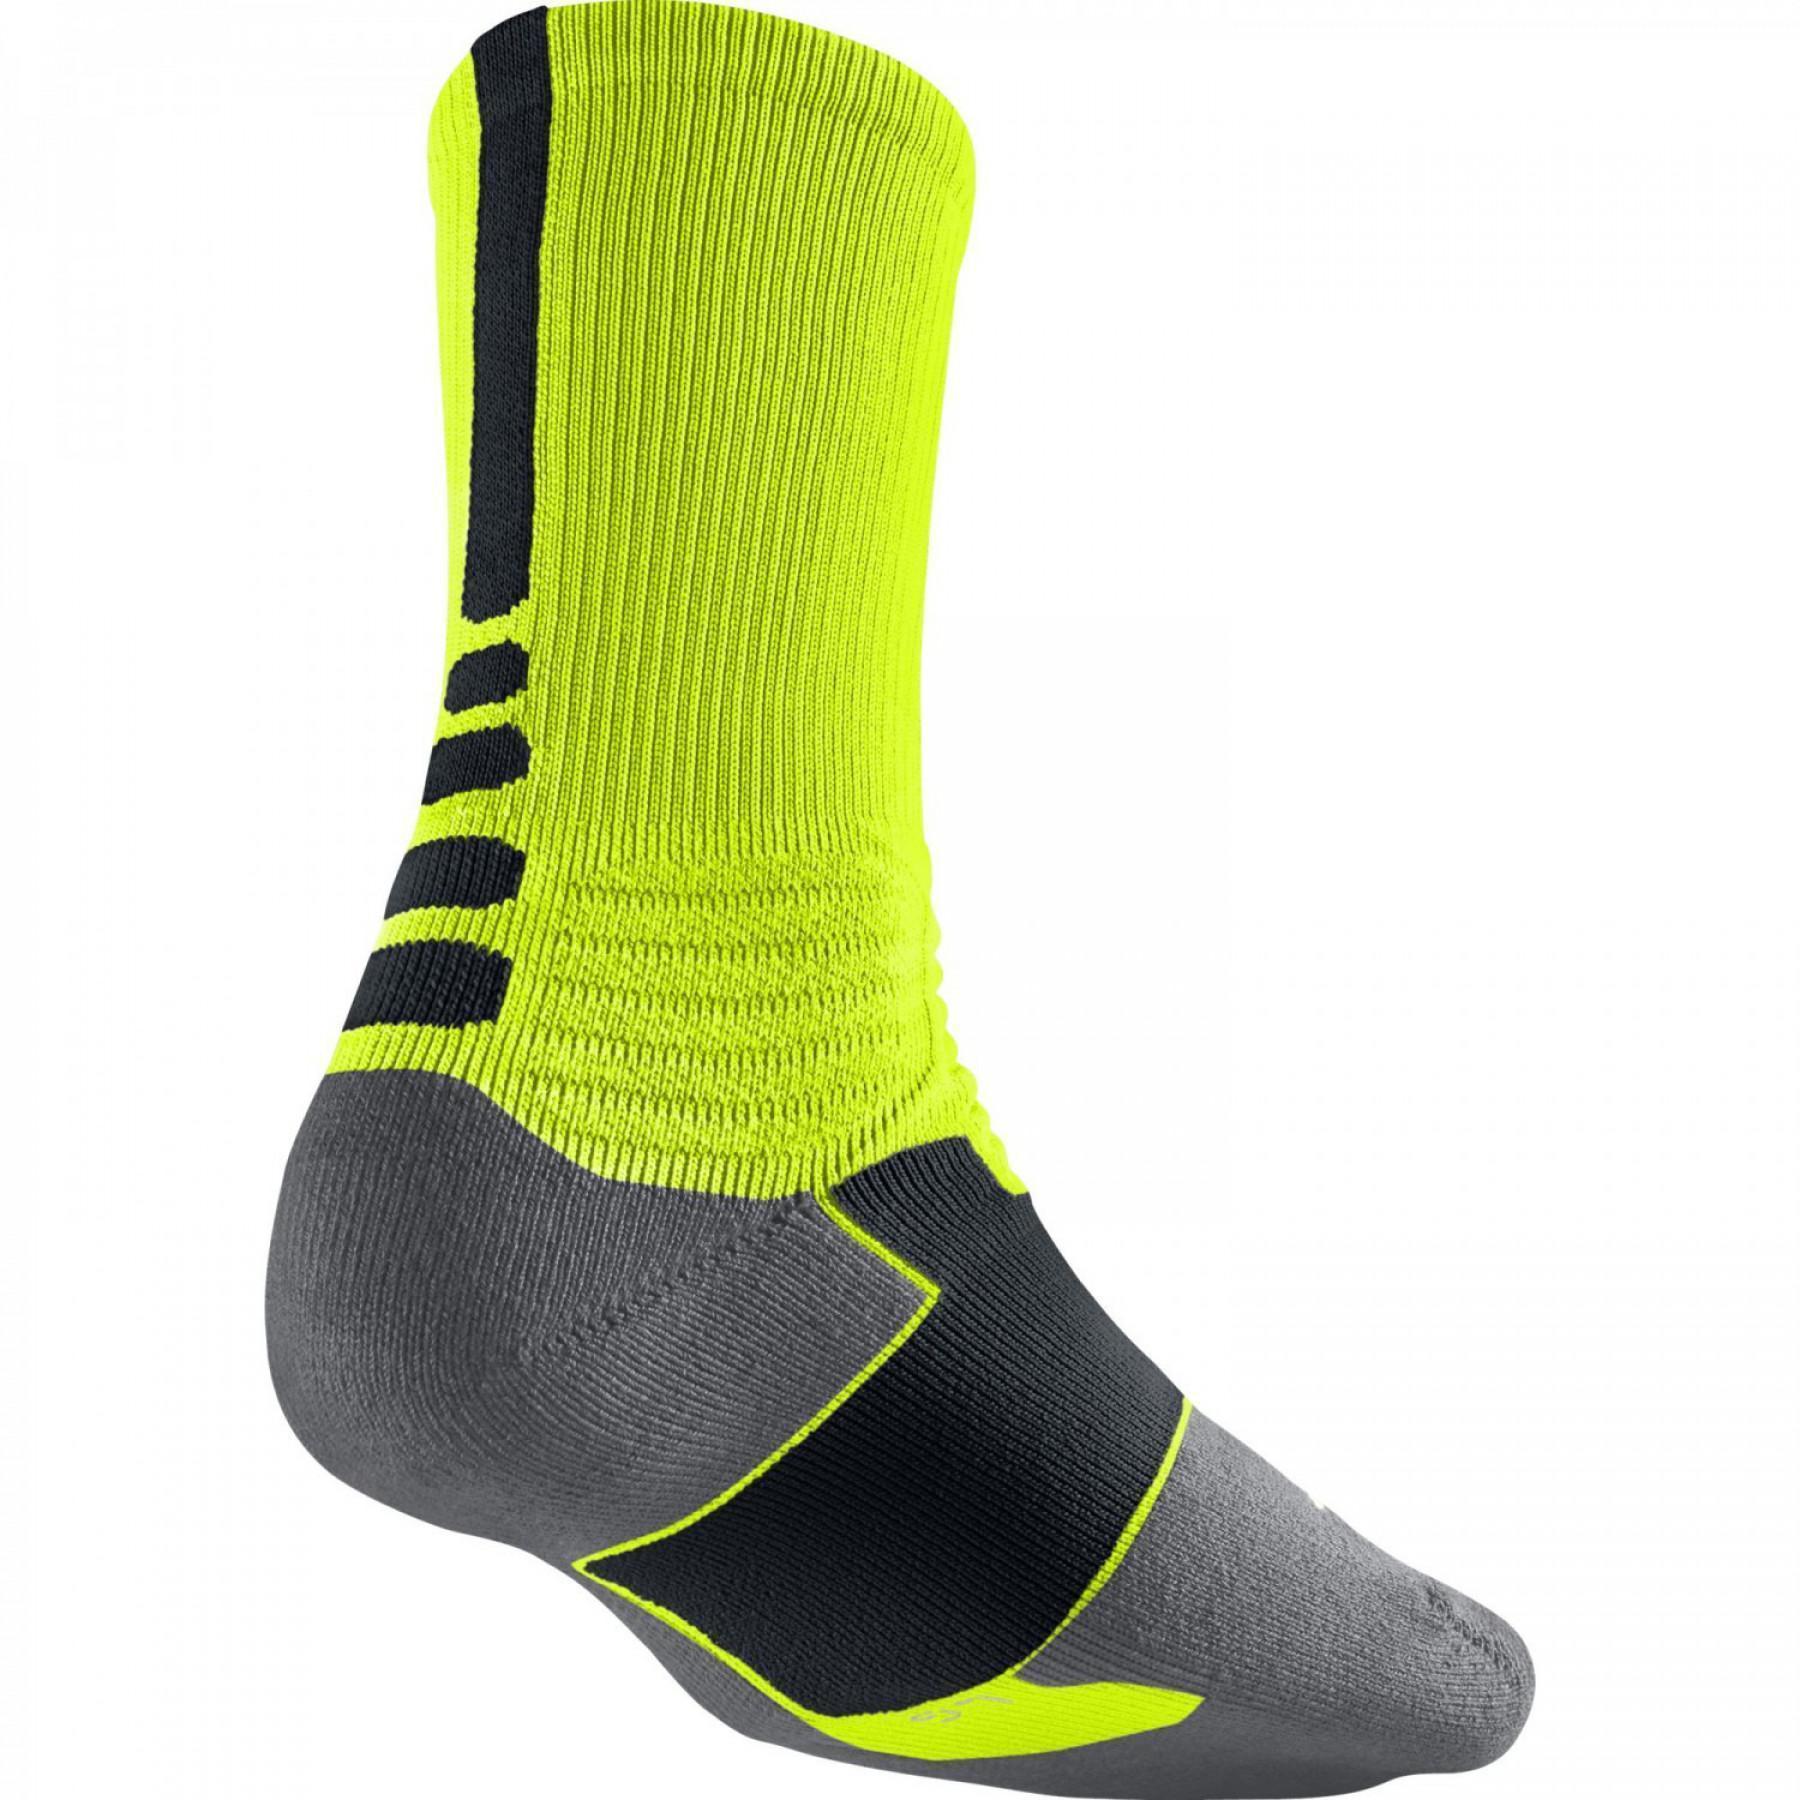 Socken Nike Hyperelite